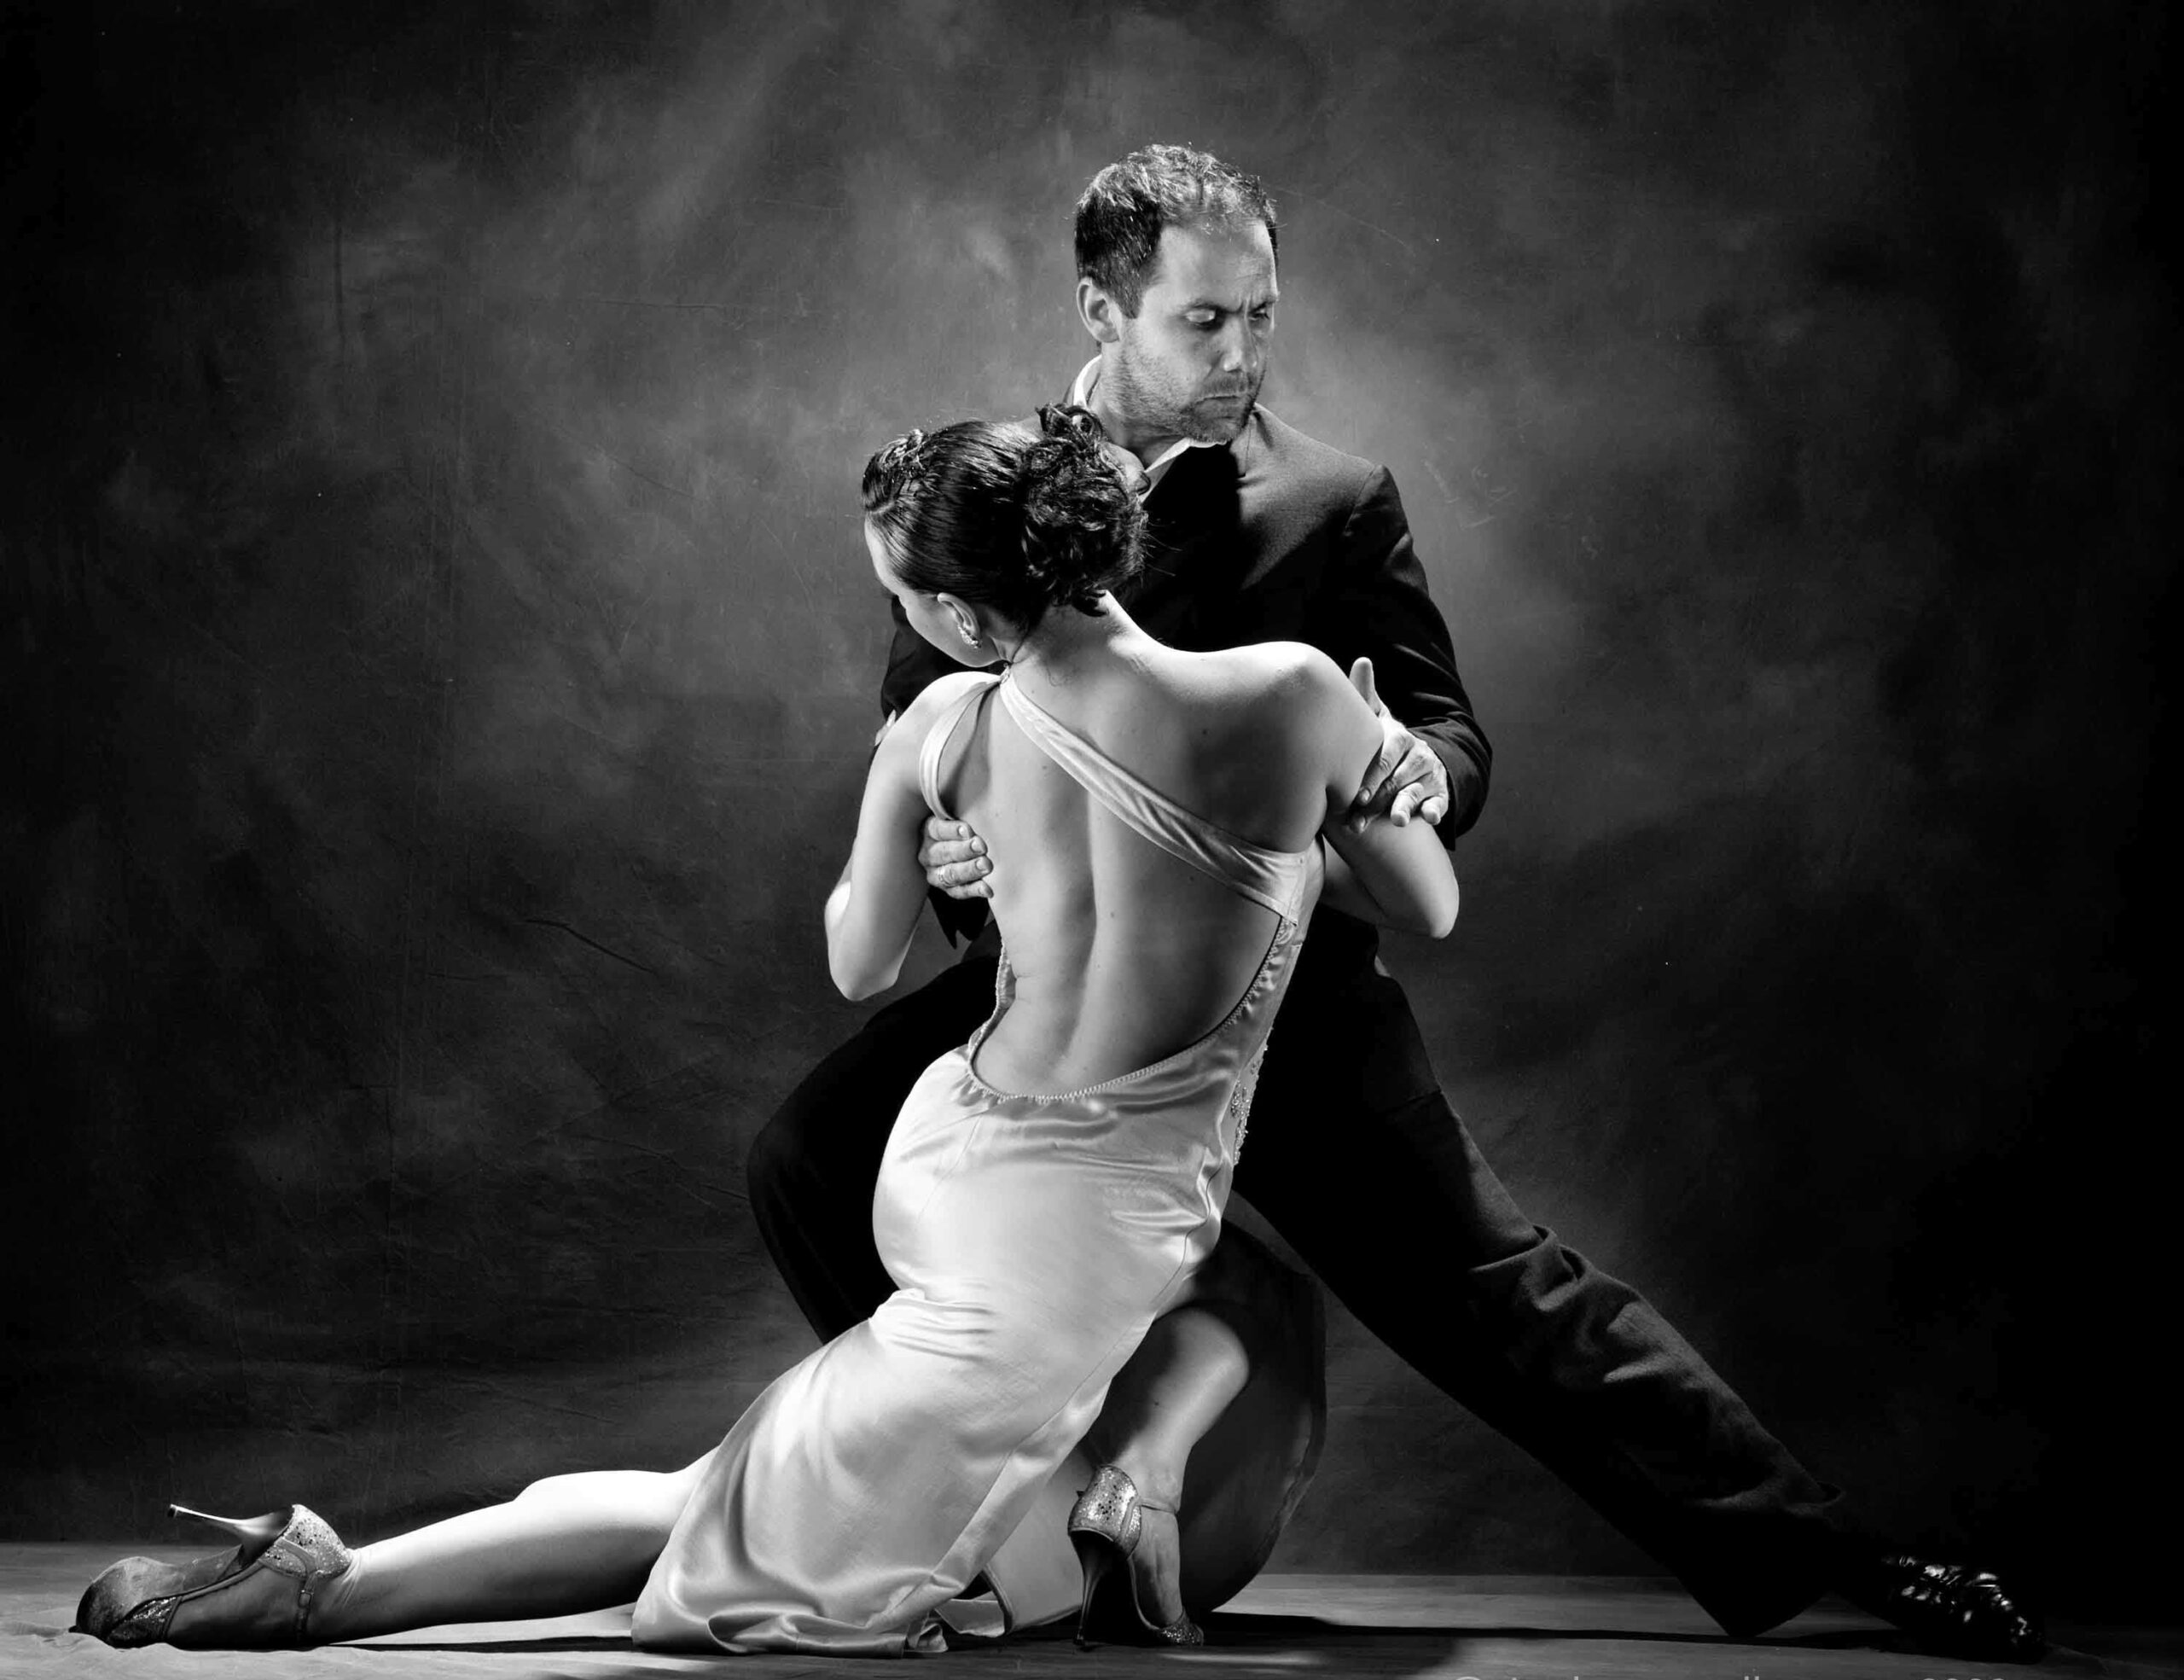 In Argentina fu uno dei re del tango, ma per Verona Mario Battistella Zoppi è uno sconosciuto